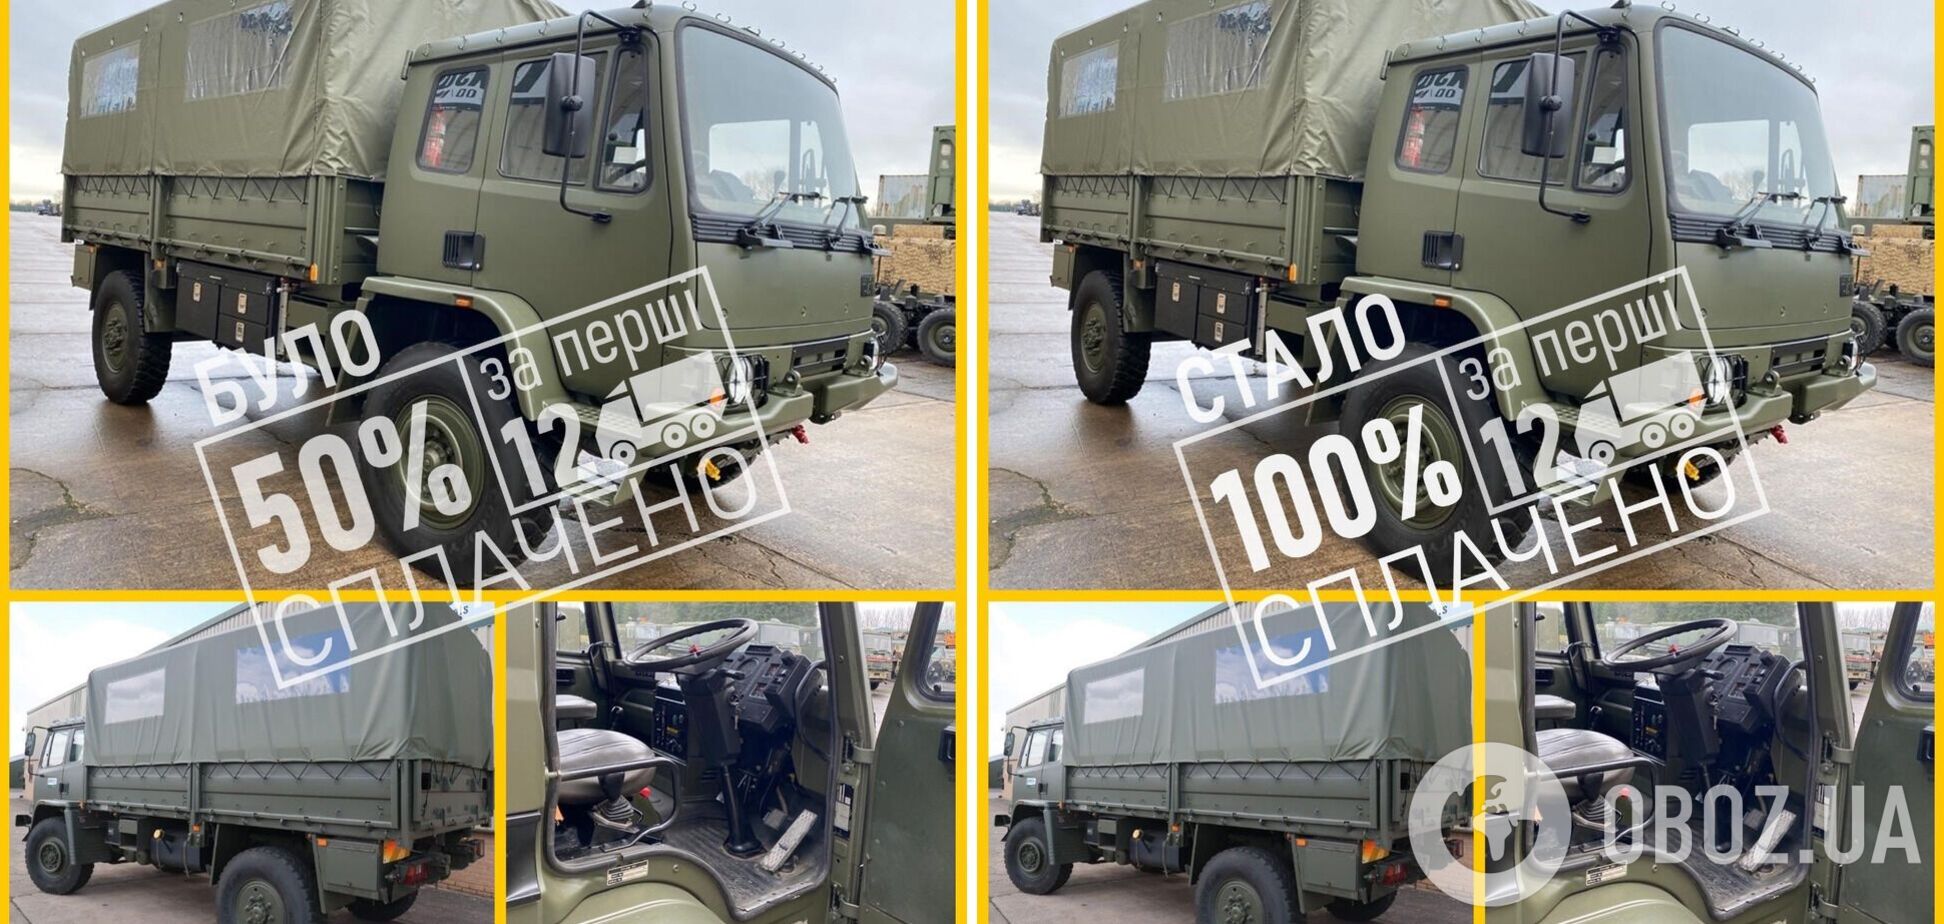 Наступного тижня в Україну прийде перша партія військових вантажівок з Британії, – волонтер Юрій Бірюков